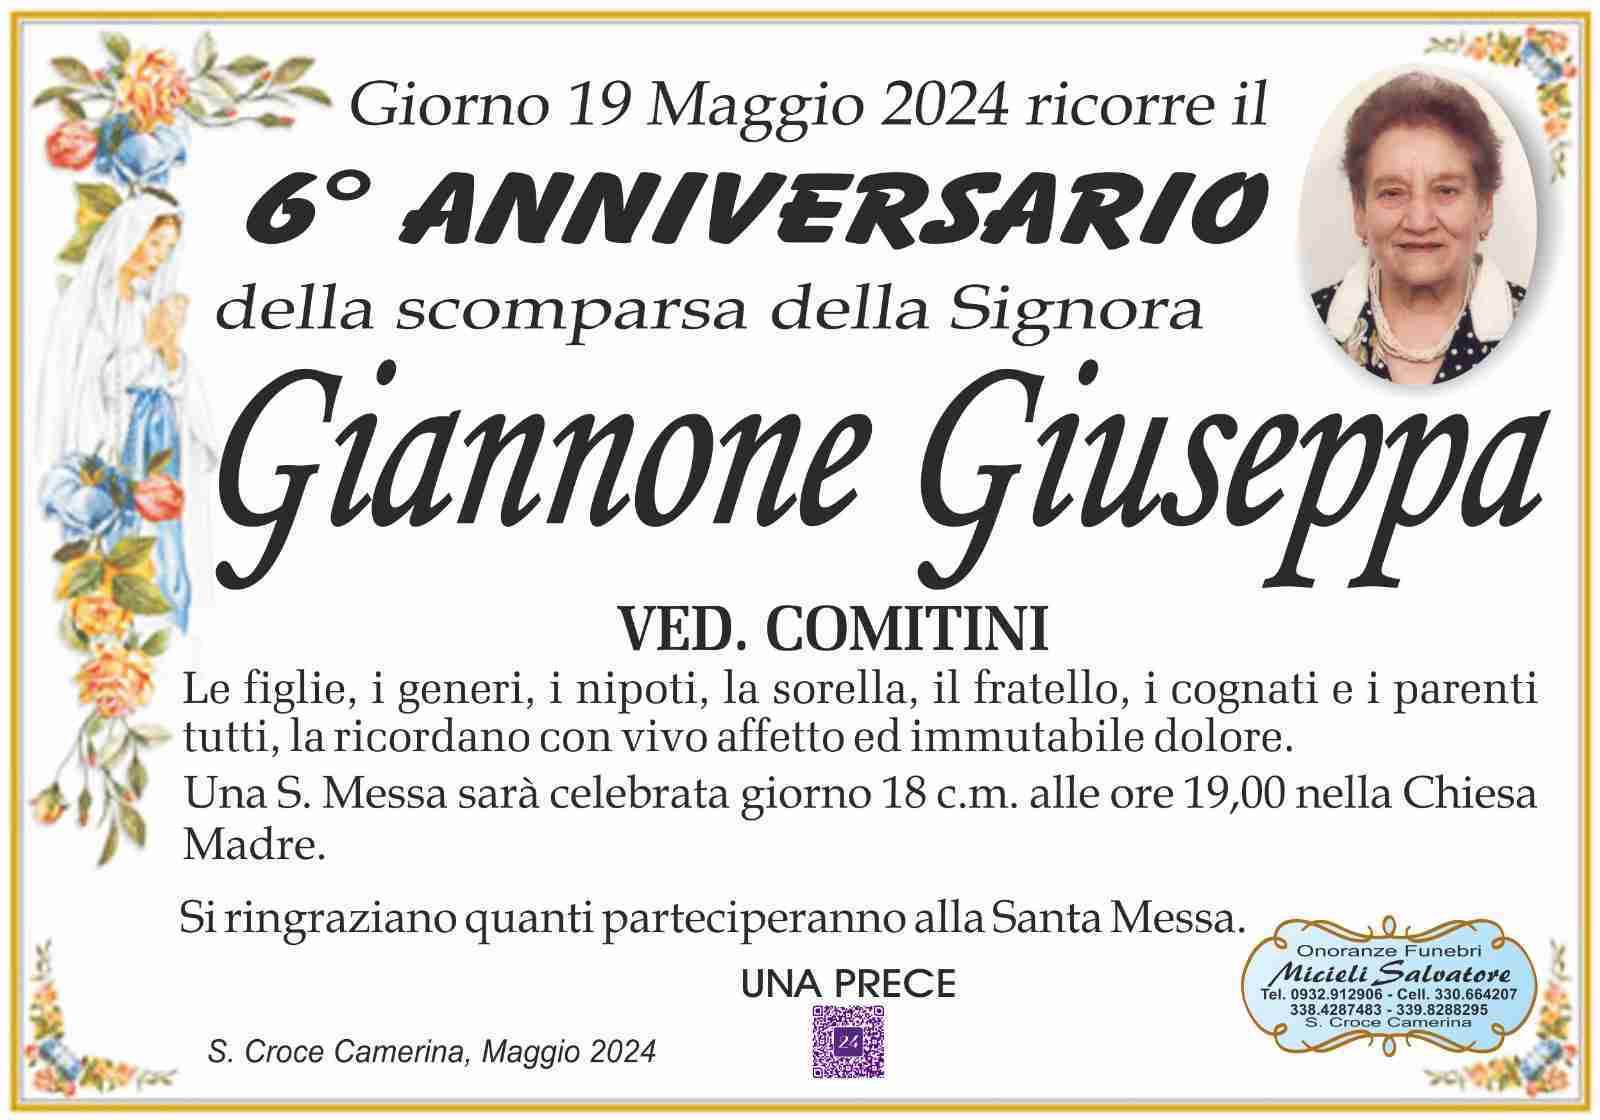 Giuseppa Giannone